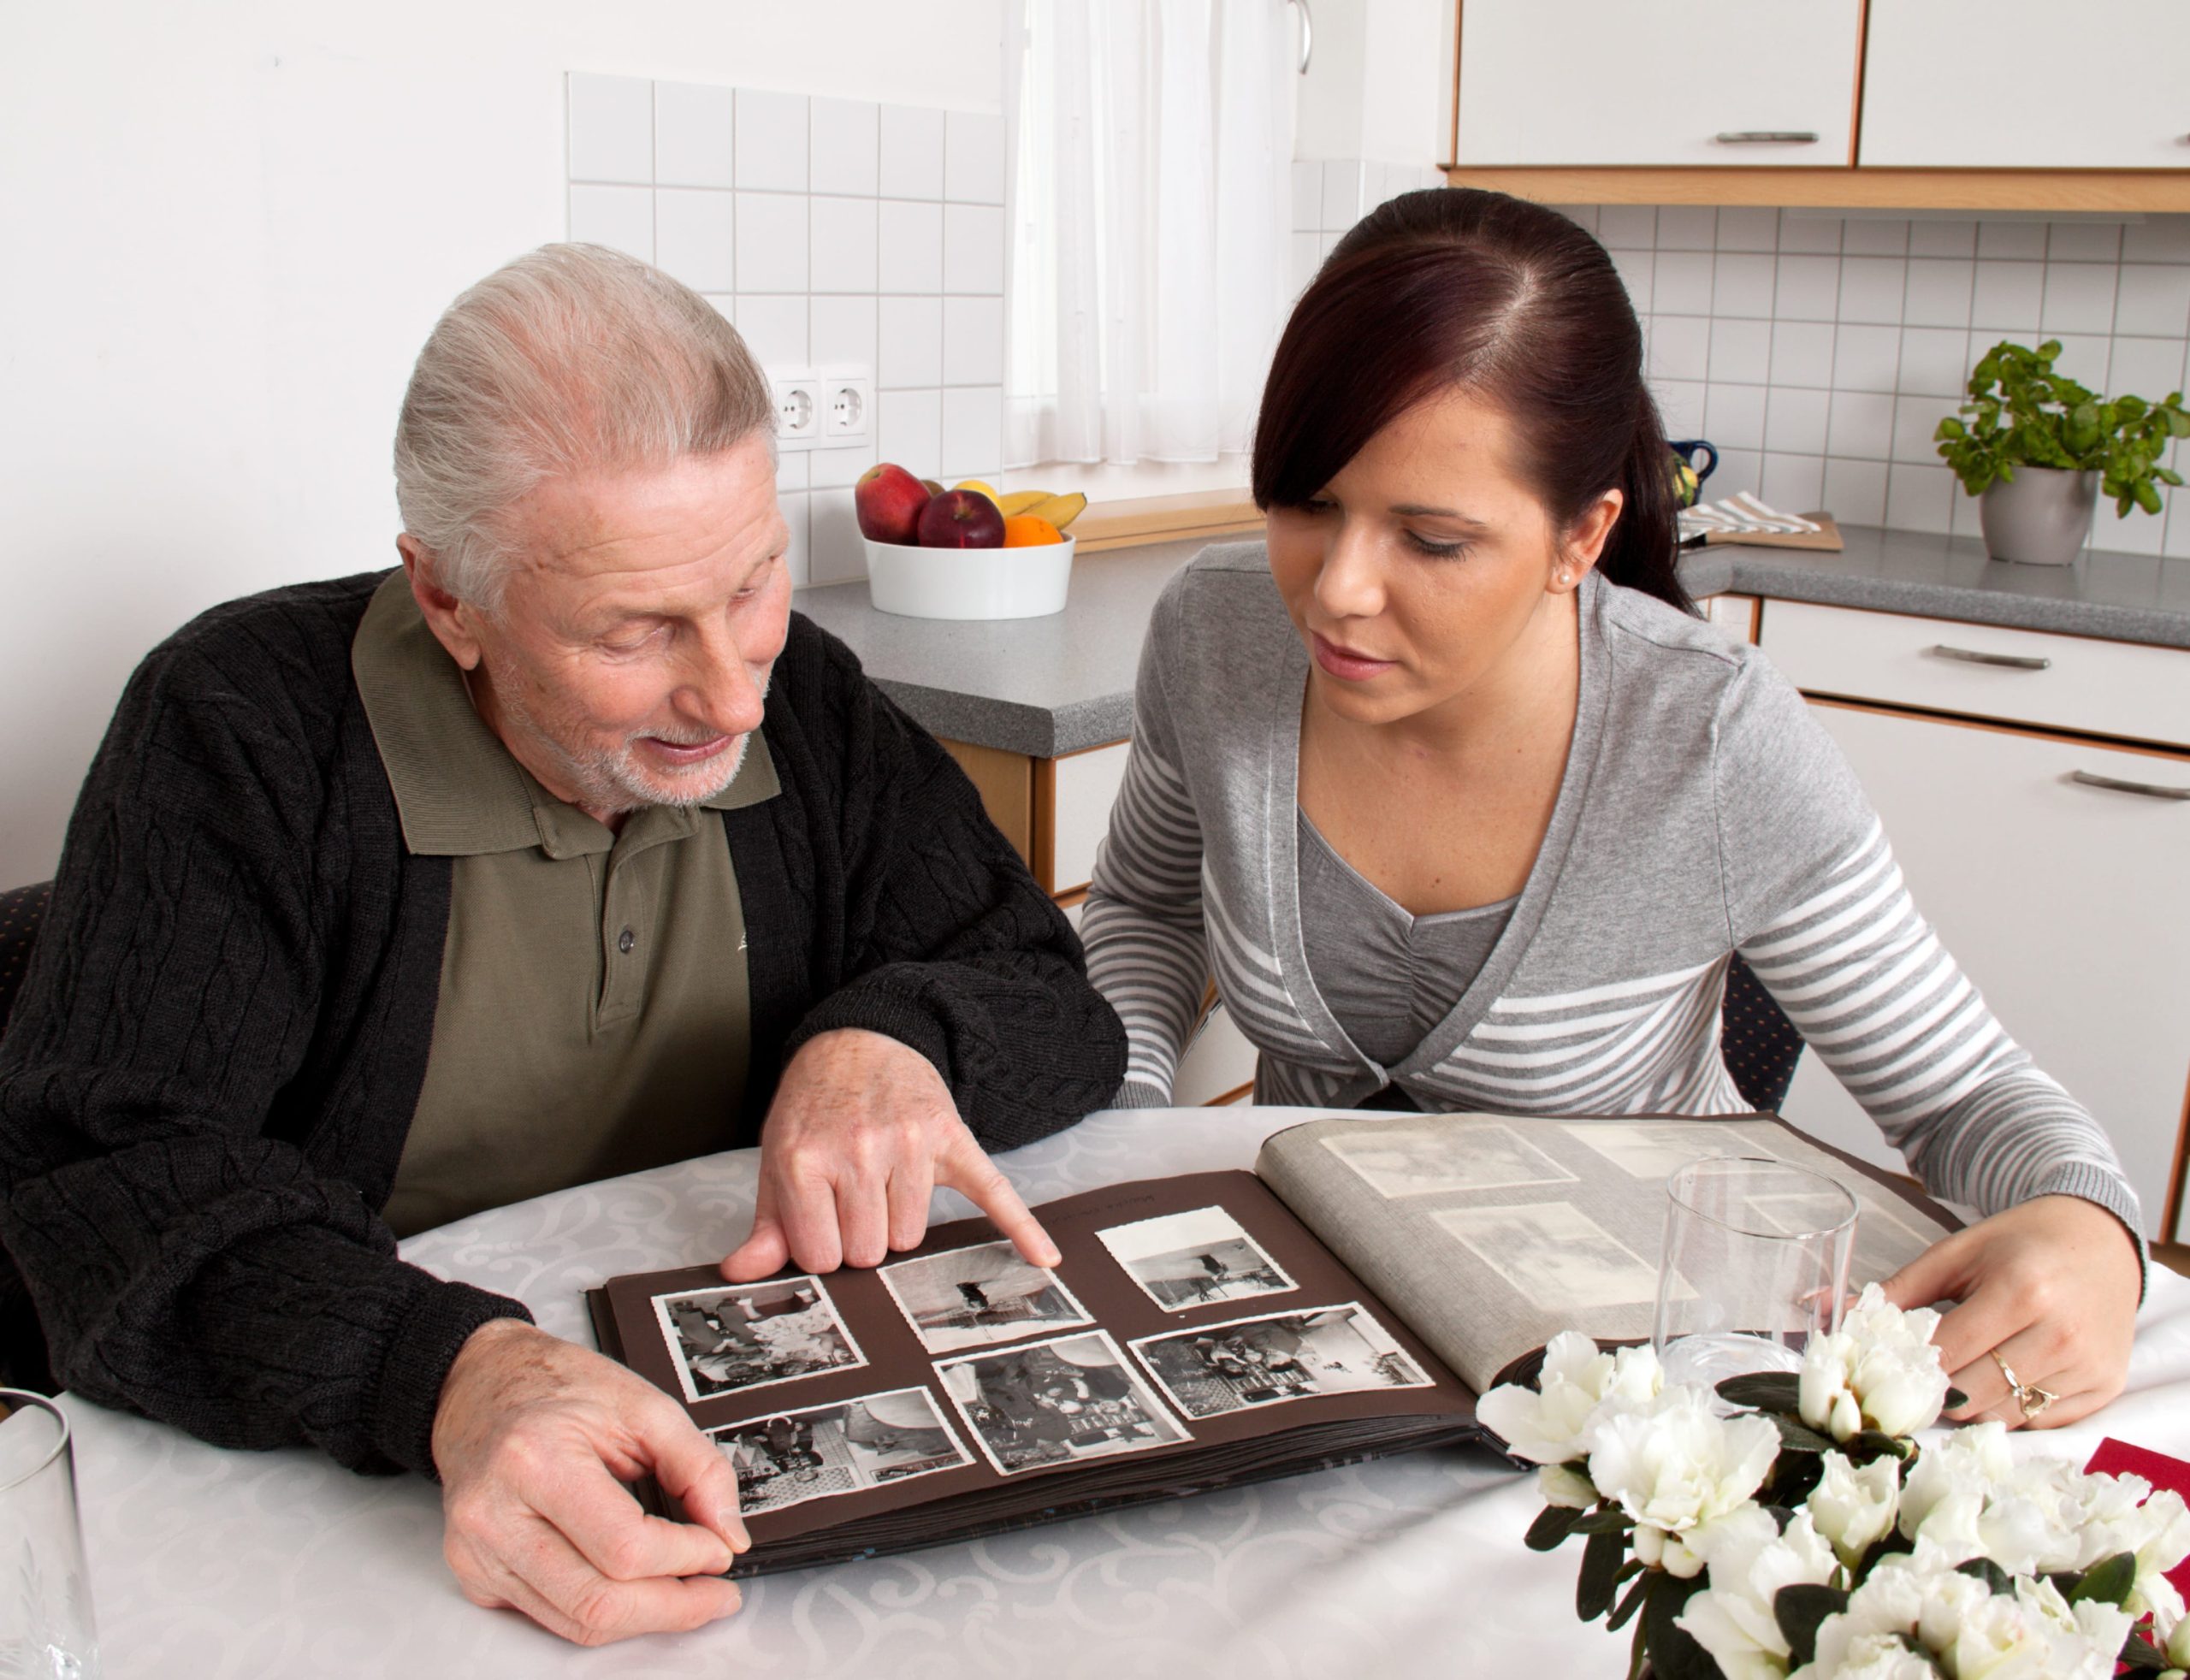 Adulto mayor mirando un album de fotos junto a mujer joven